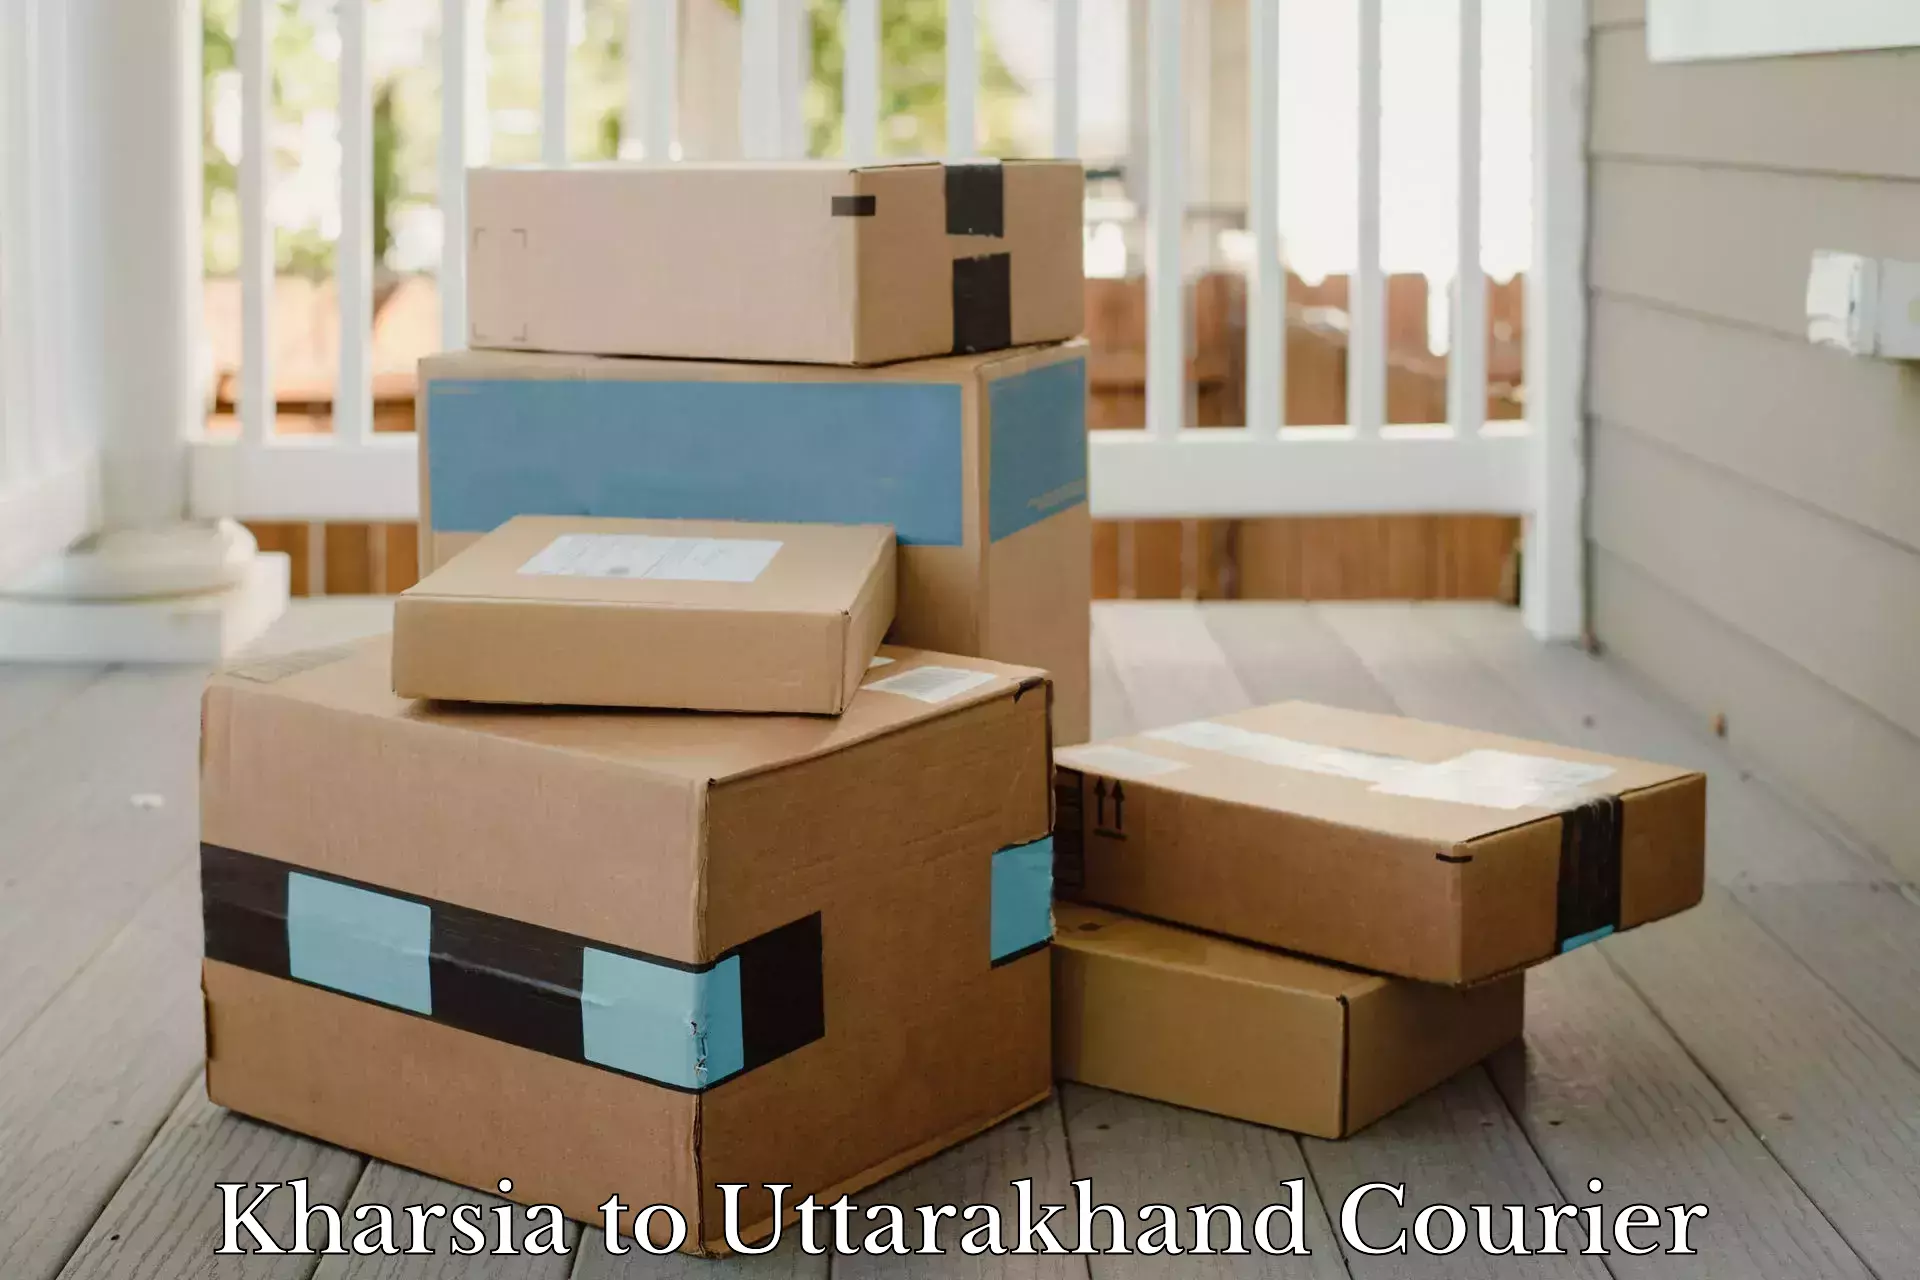 Reliable parcel services Kharsia to Dwarahat